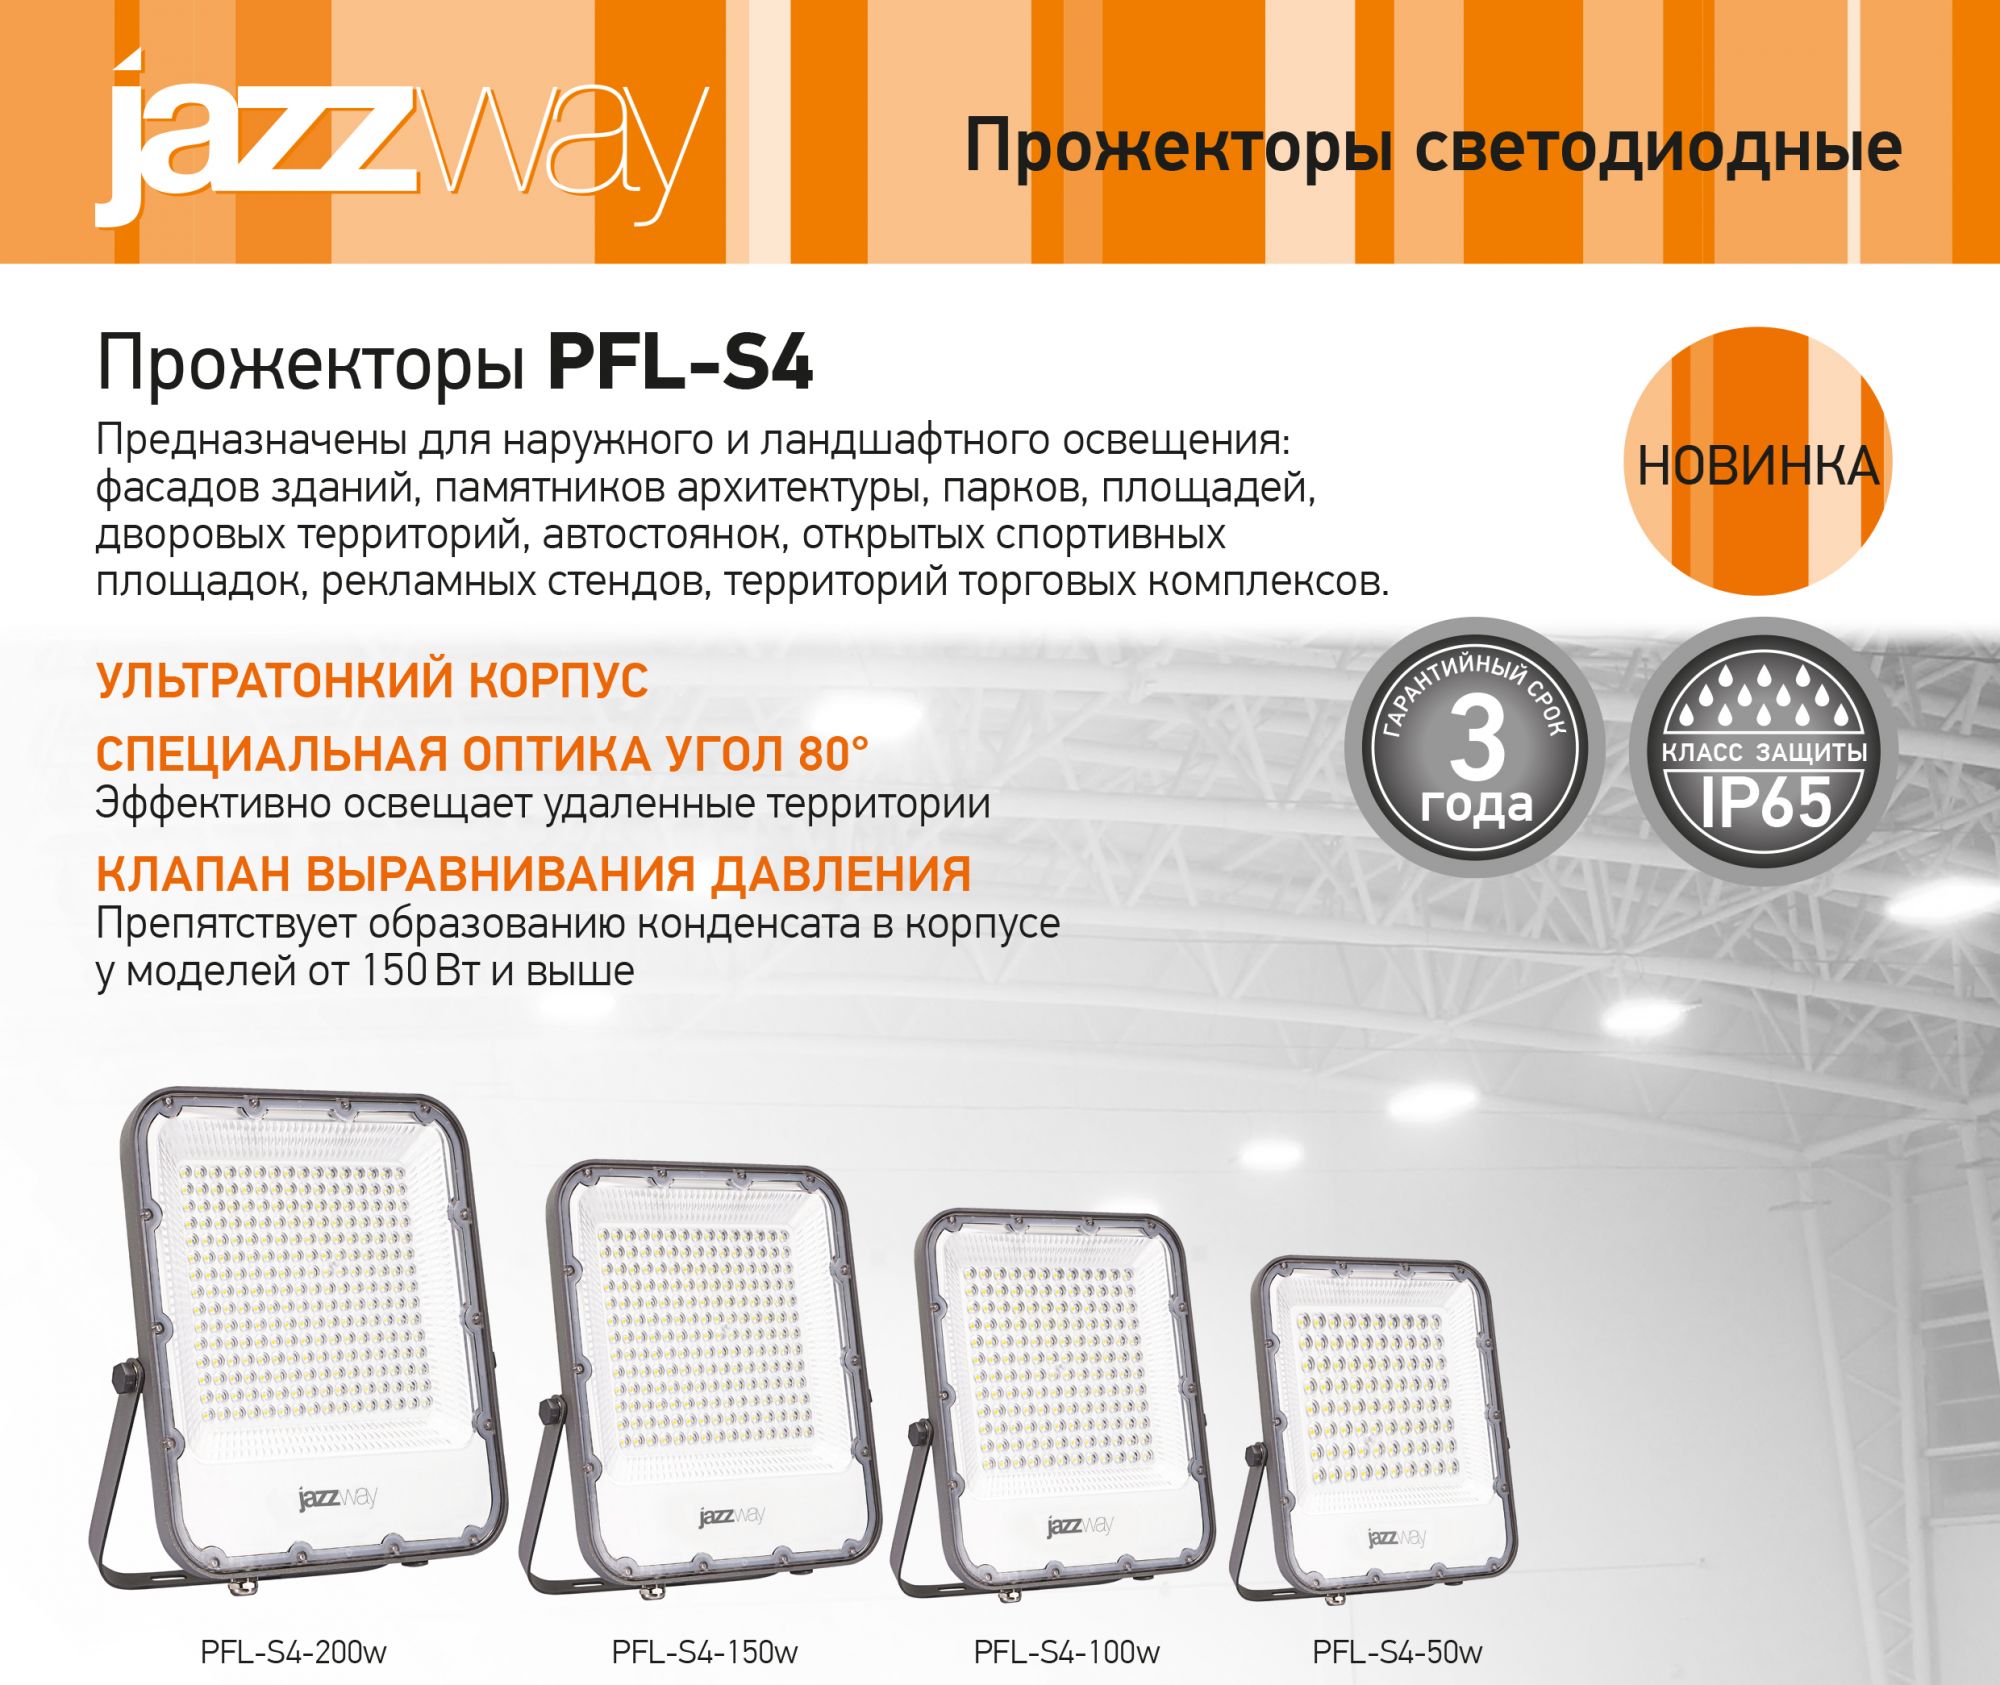 Линейка LED прожекторов PFL-S4 от JAZZWAY пополнилась новыми моделями